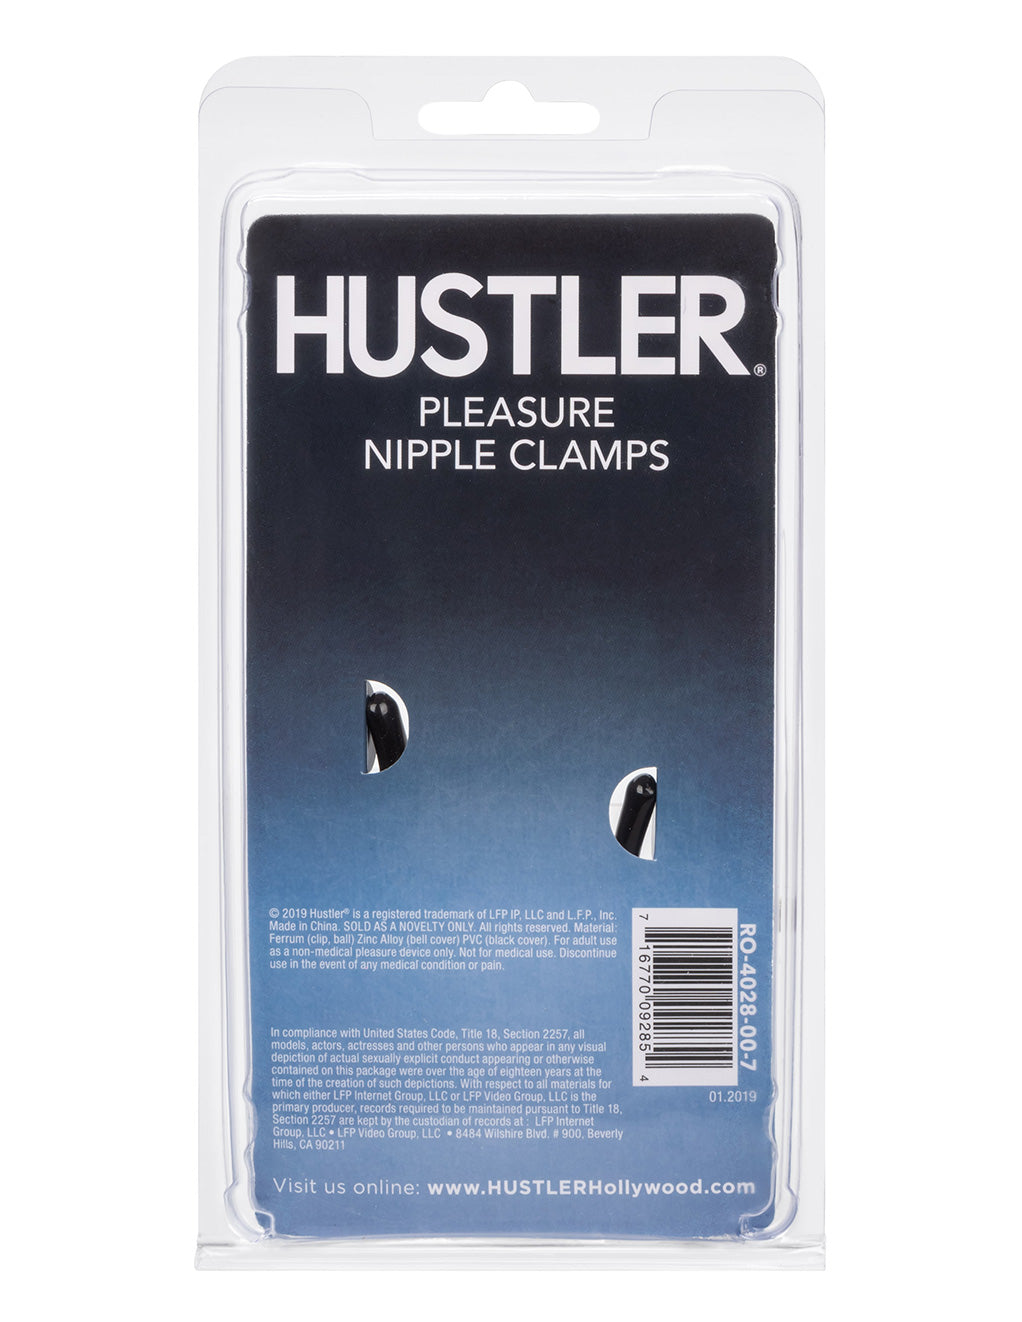 Hustler® Pleasure Nipple Clamps- Back package